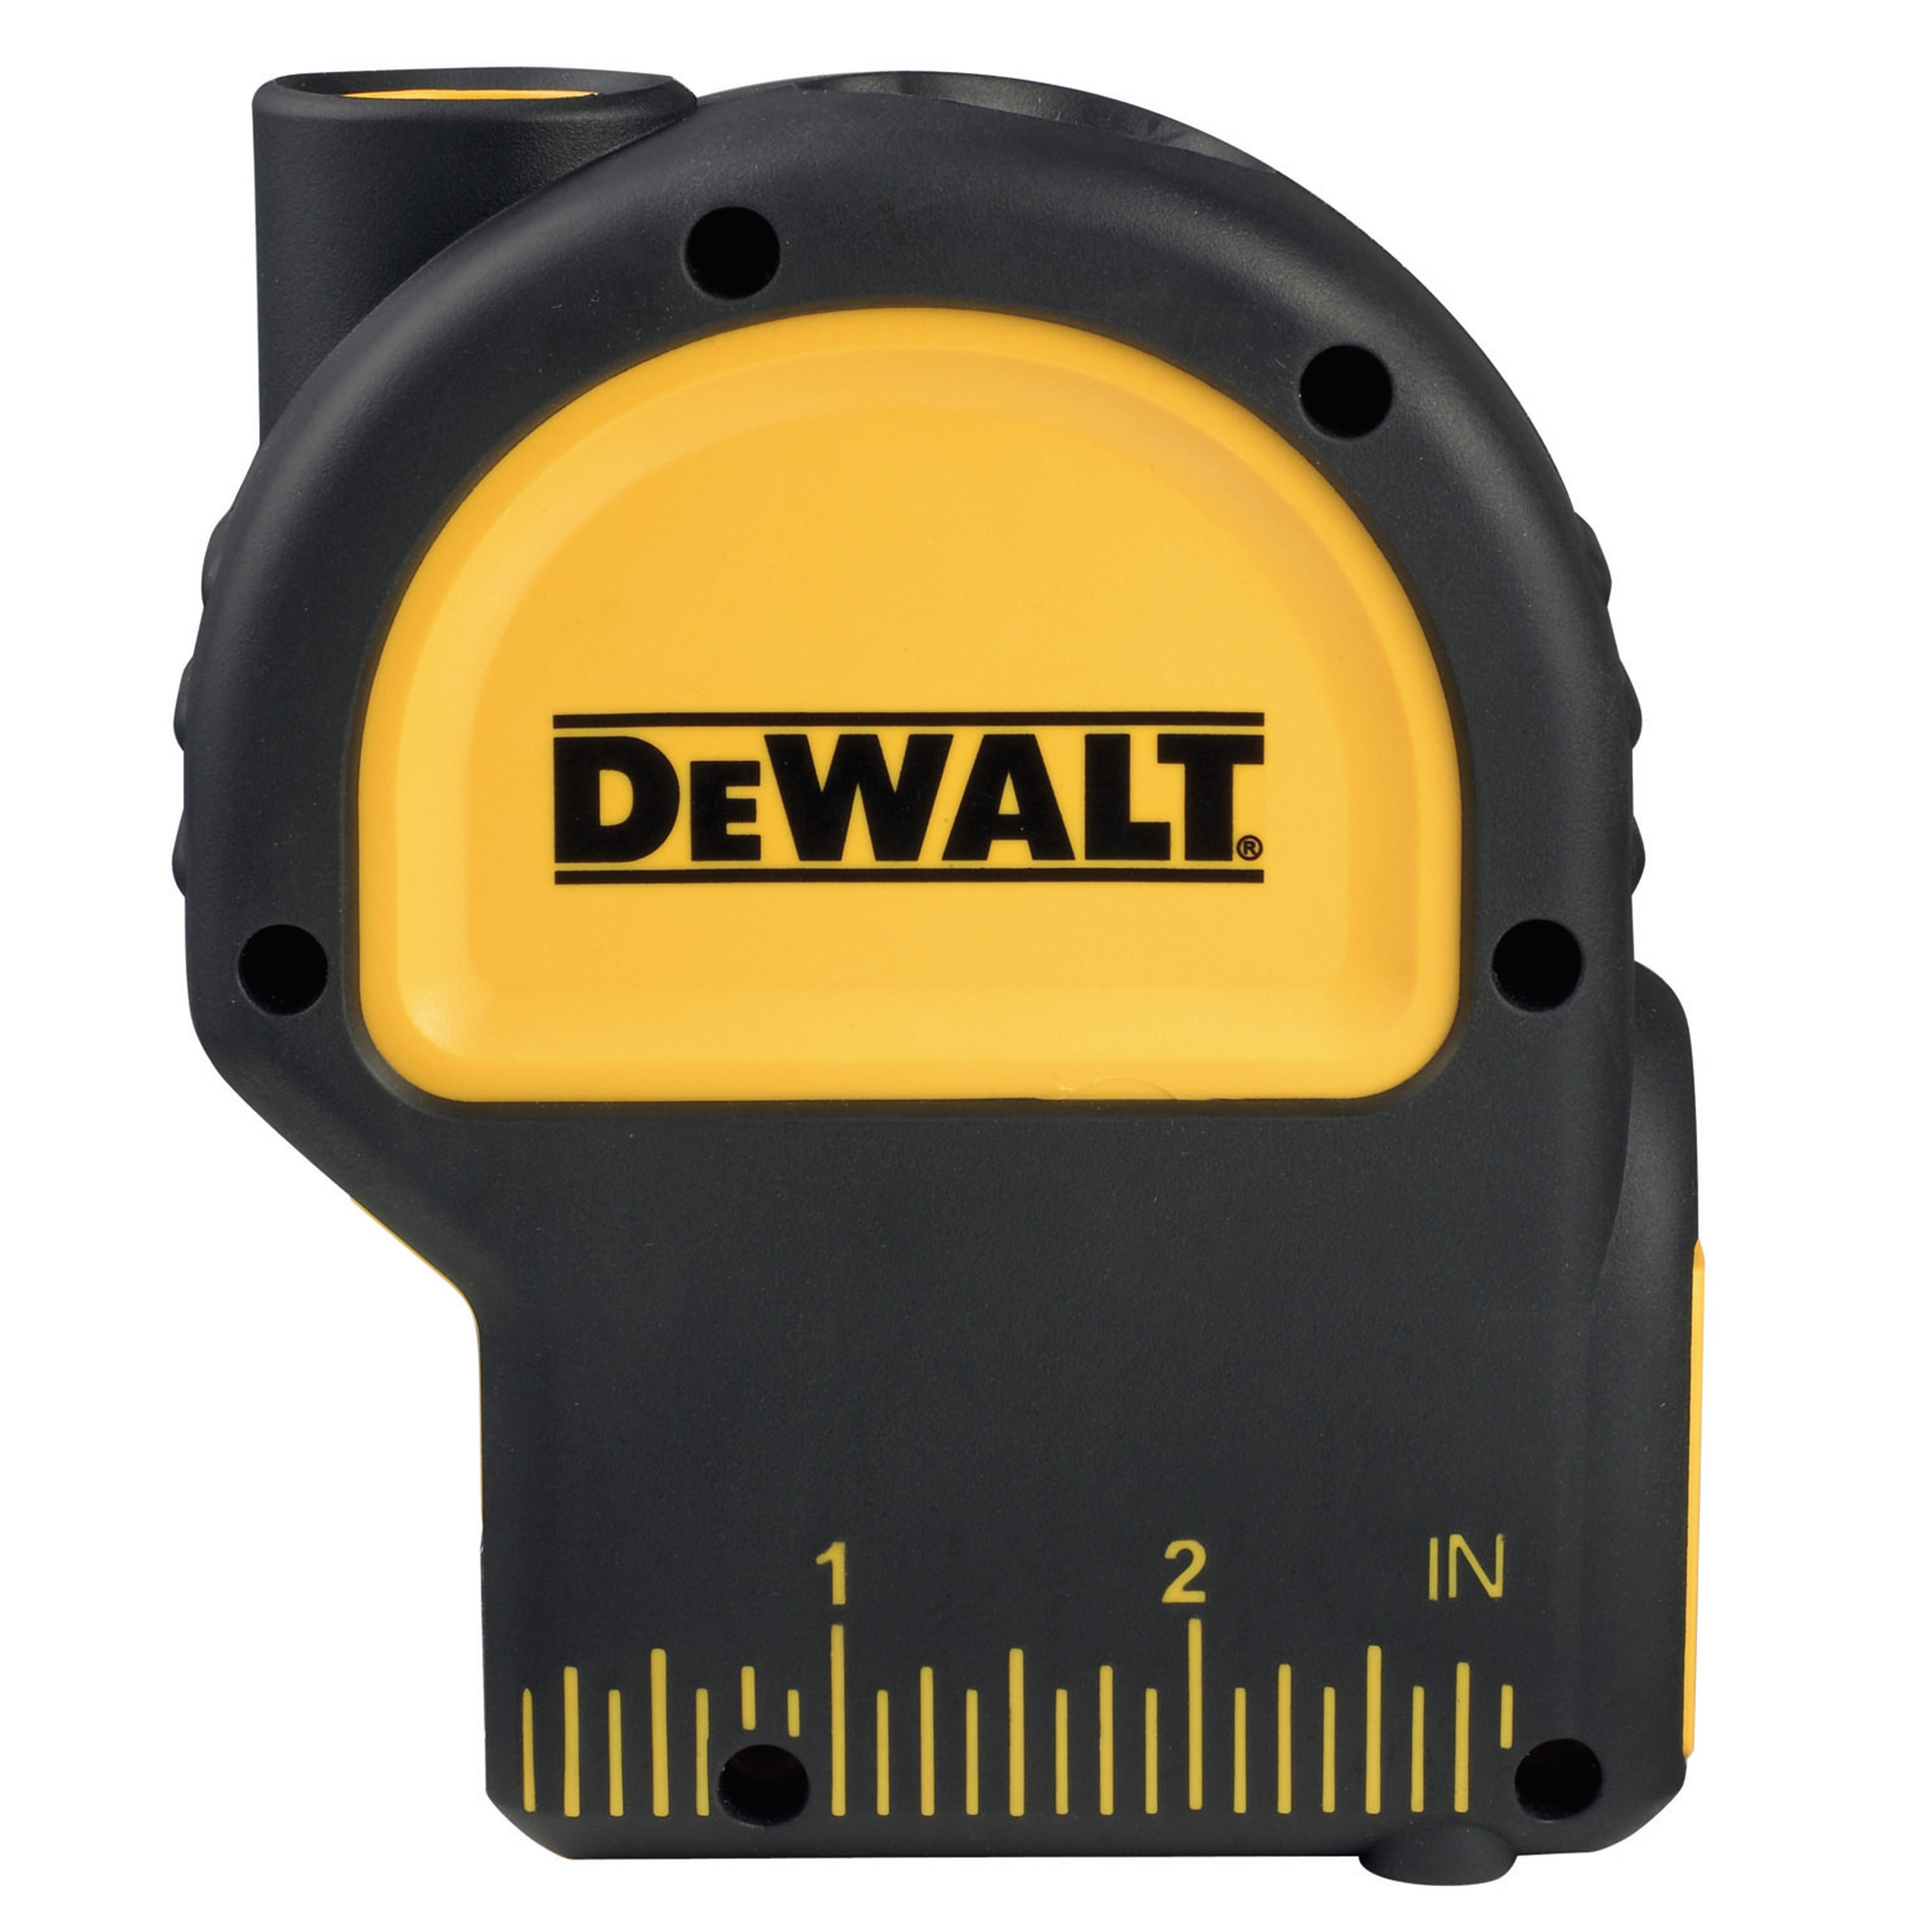 DEWALT DW0822 Self-Leveling Cross-Line and Plumb Laser Level for sale online 